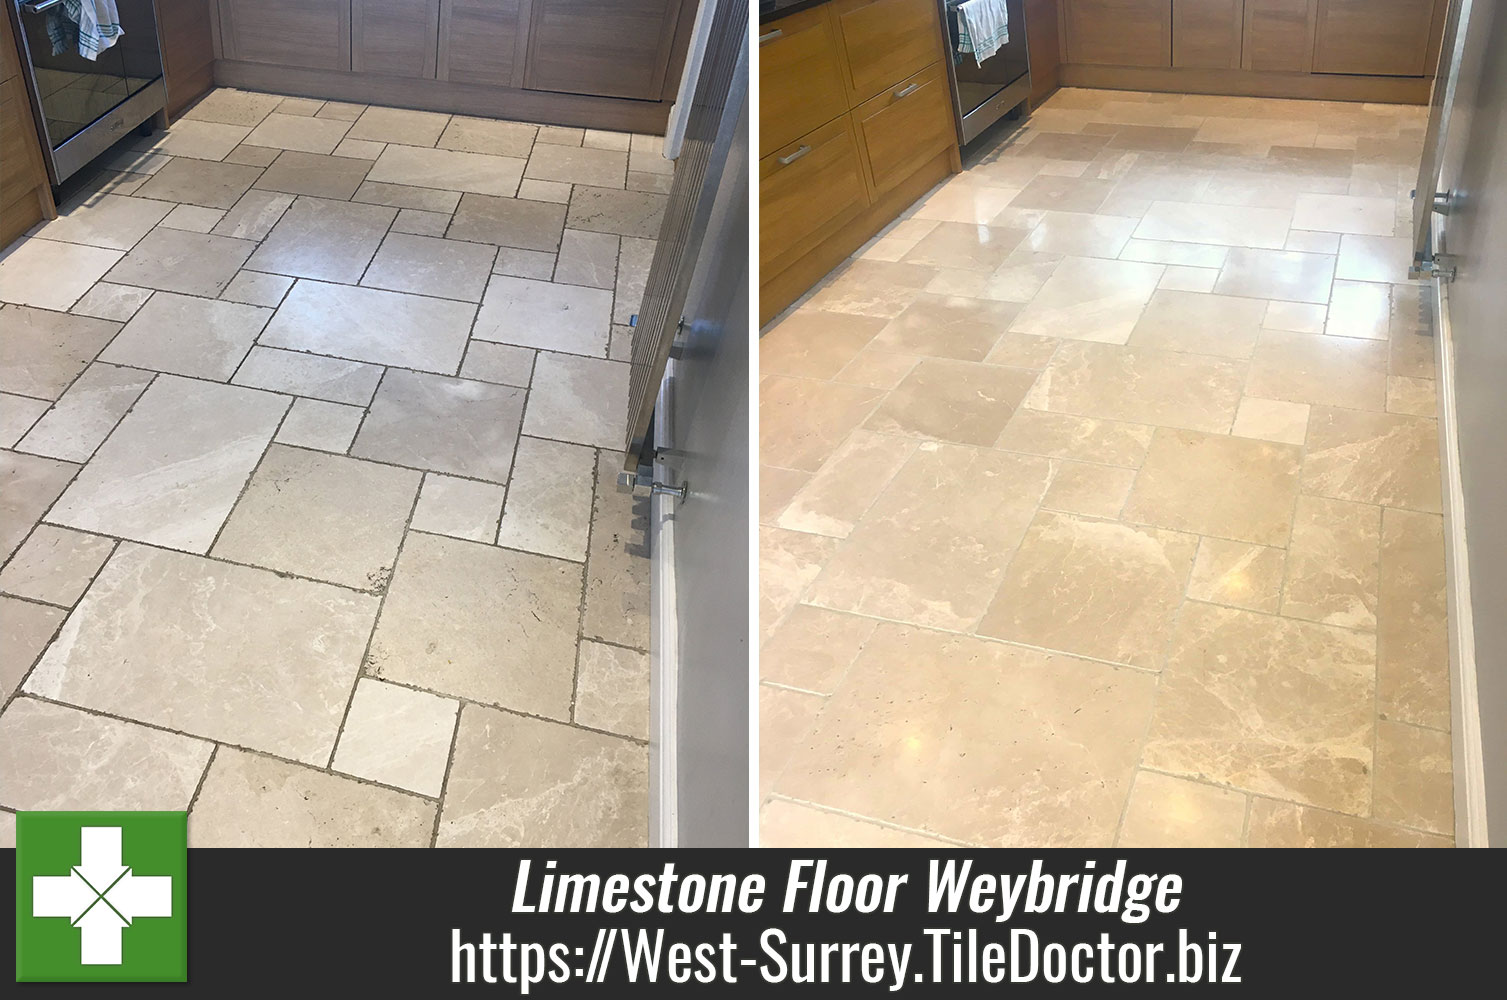 Limestone Kitchen Floor Polished with Tile Doctor Burnishing Pads in Weybridge Surrey